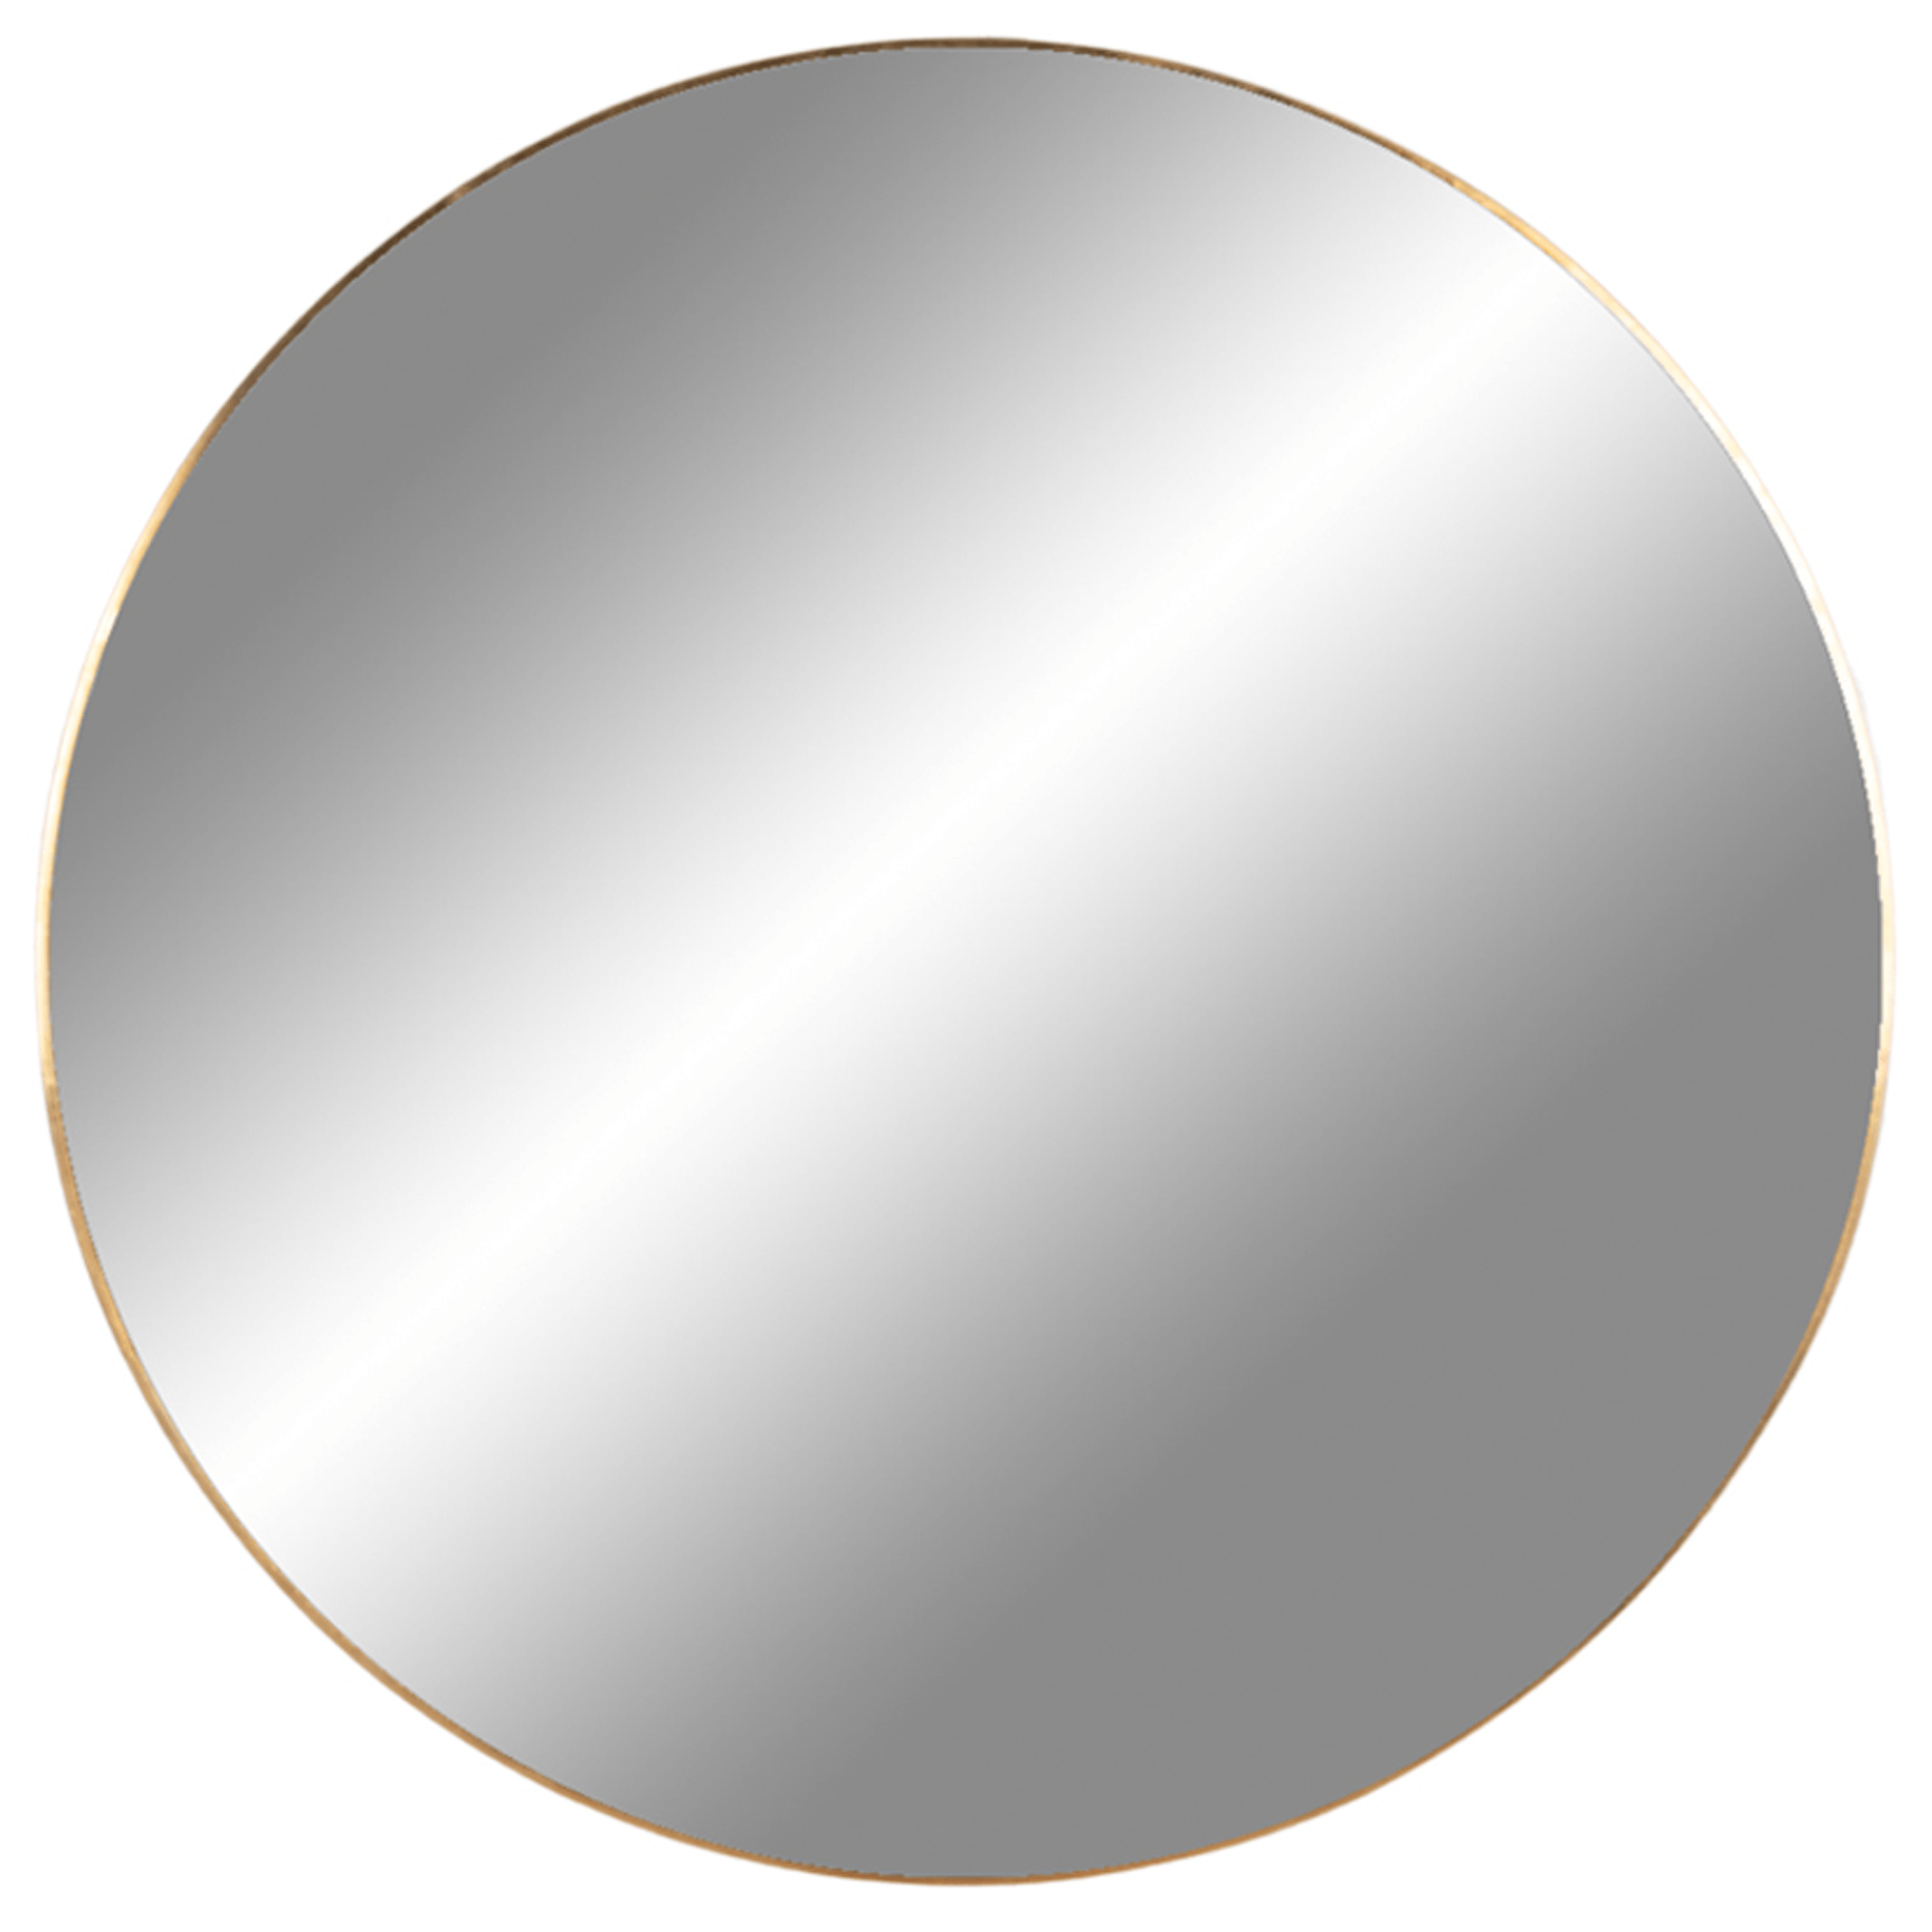 Billede af Cirkel spejl med messing ramme, Ø 80 cm. hos Naga.dk